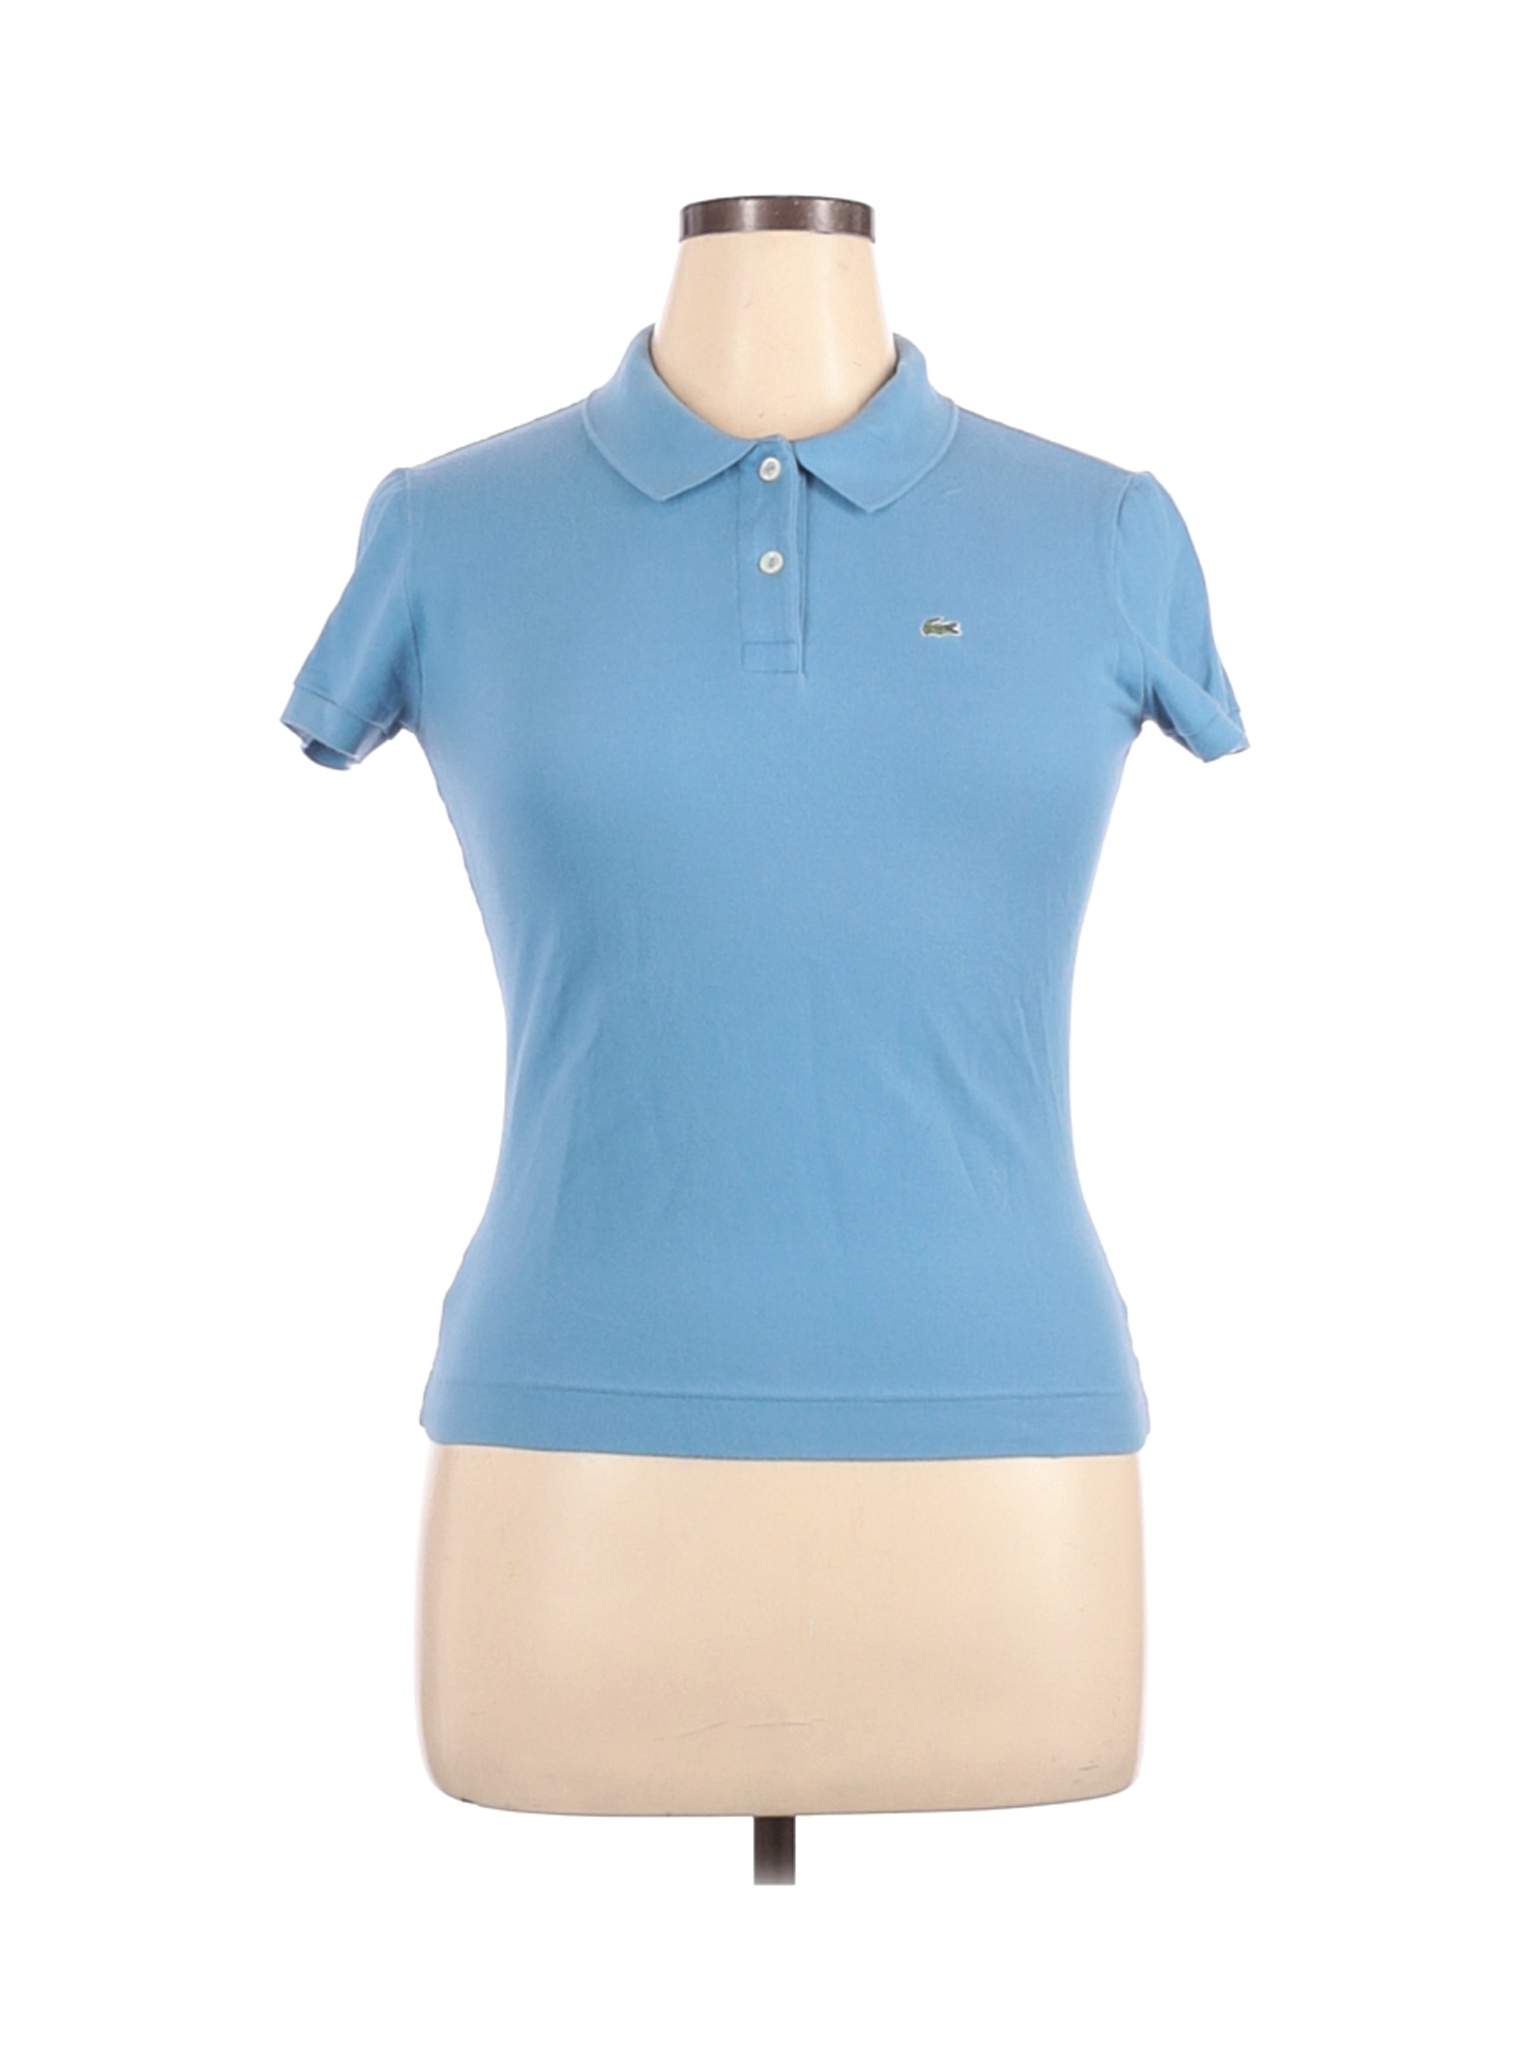 Lacoste Women Blue Short Sleeve Polo 46 eur | eBay